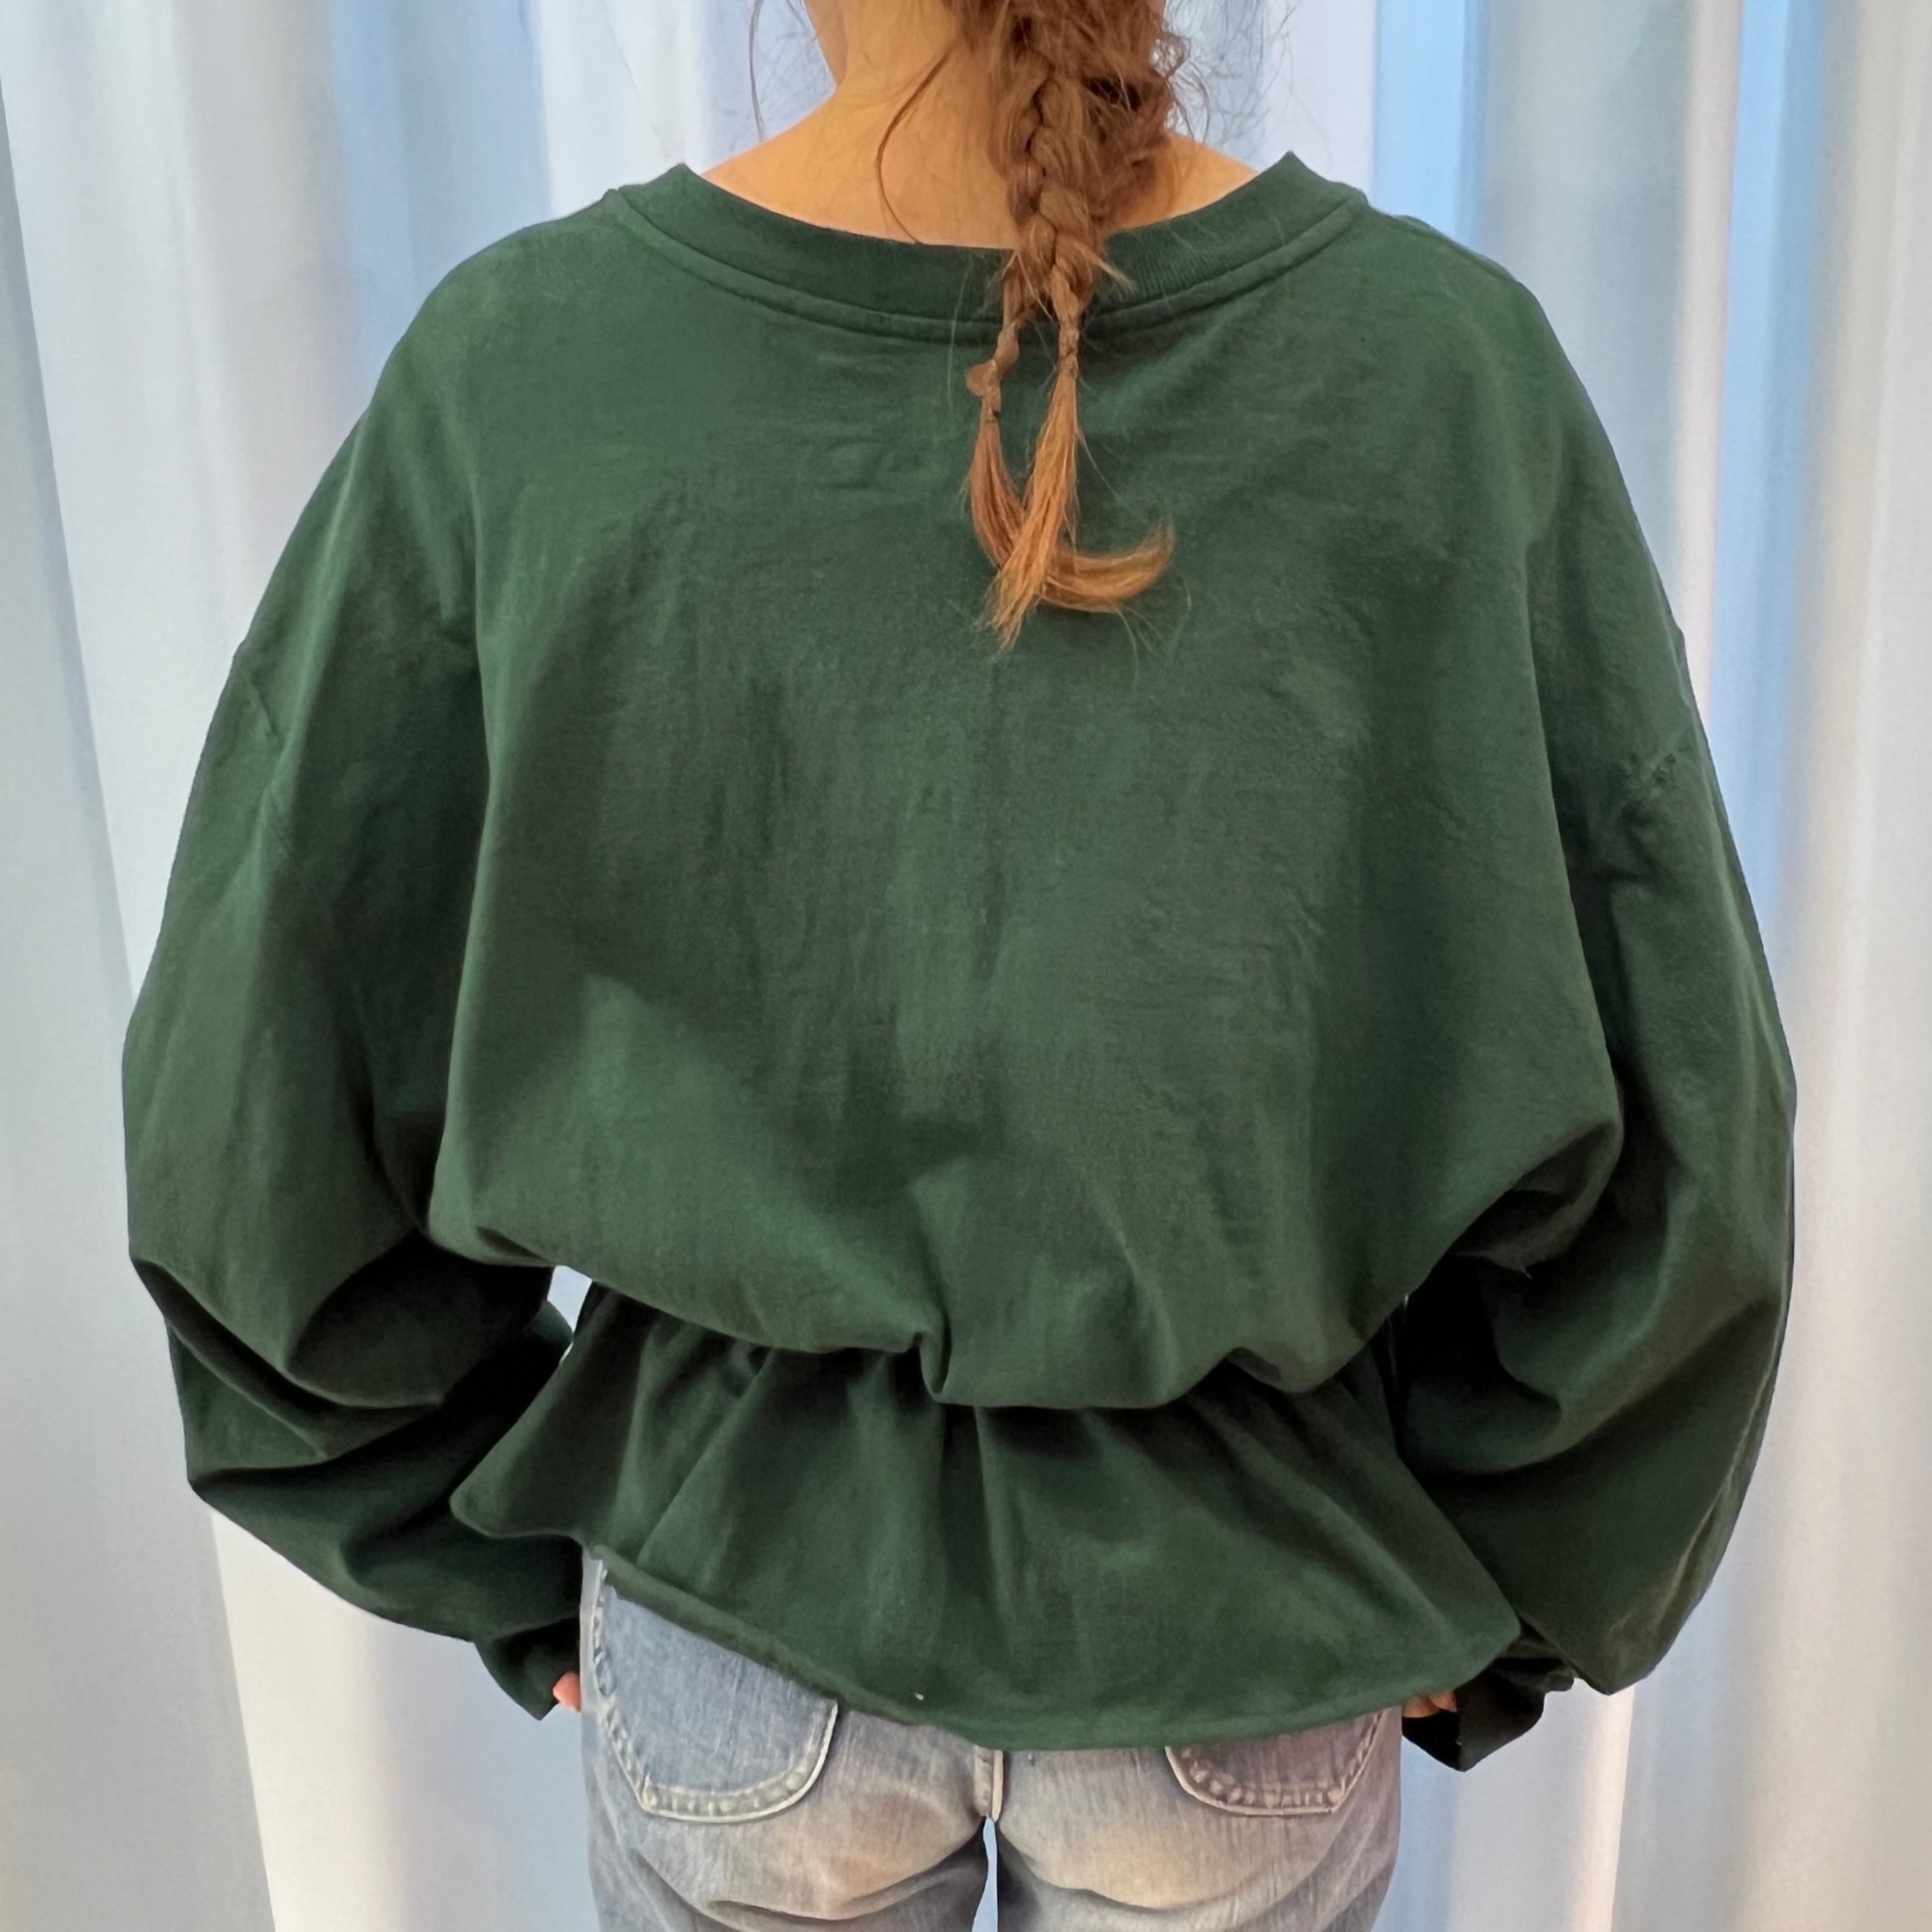 Carhartt peplum shirt - green